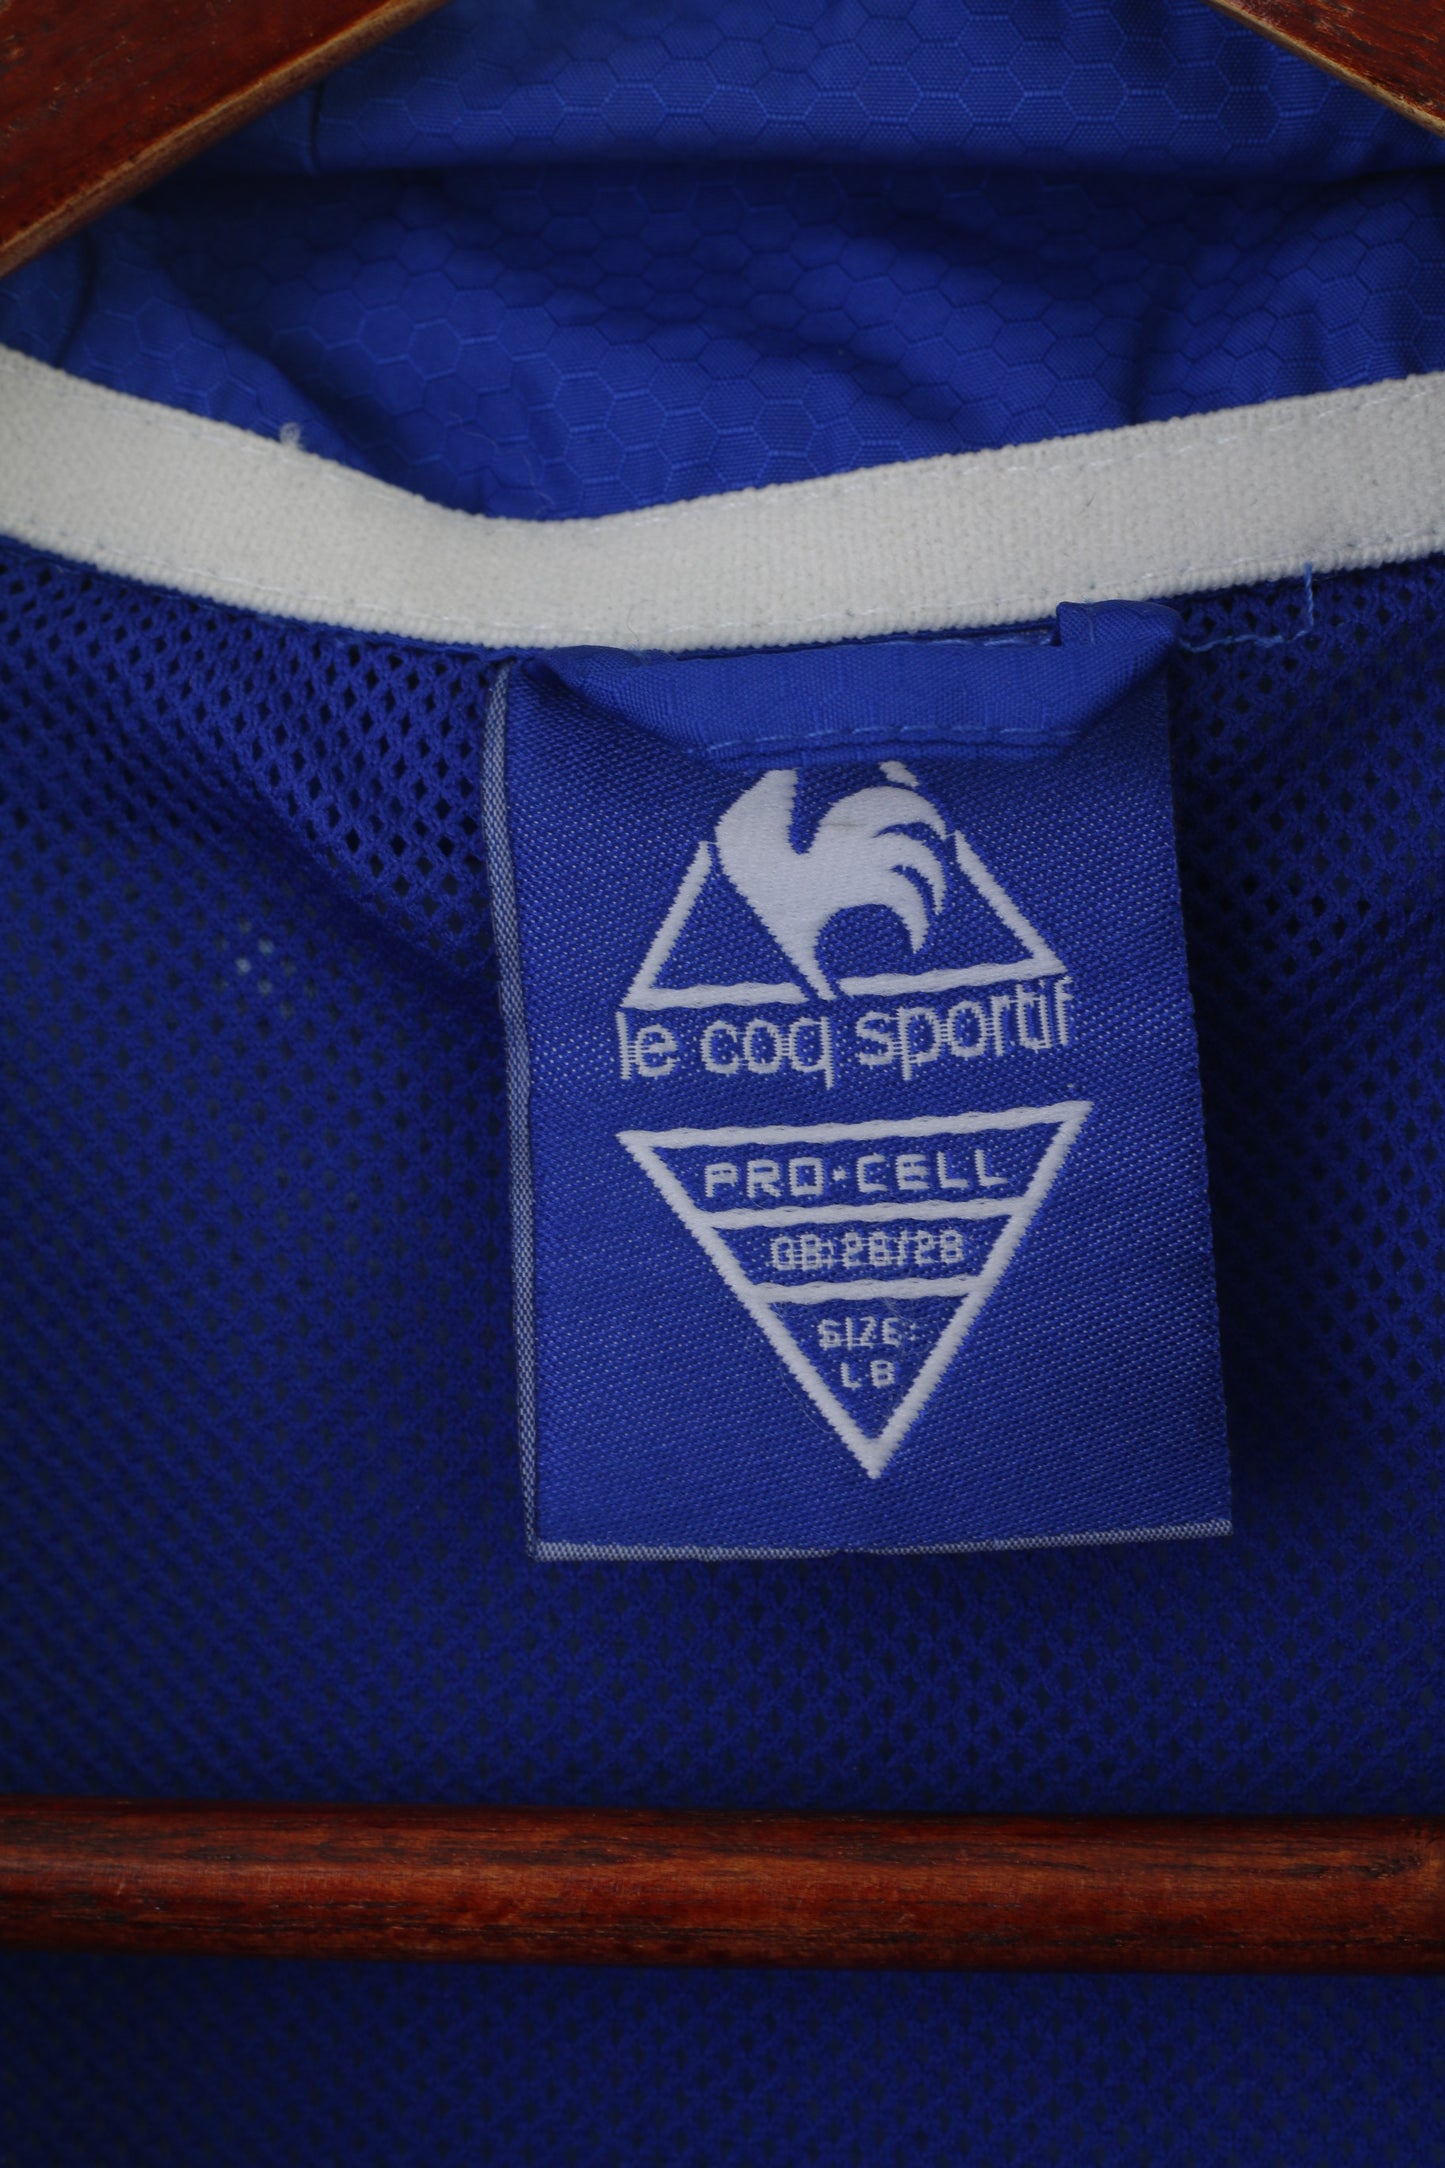 Le Coq Sportif Boys LB 8-10 Age Jacket Blue Football Evertoon Sportswear Pro Cell Top